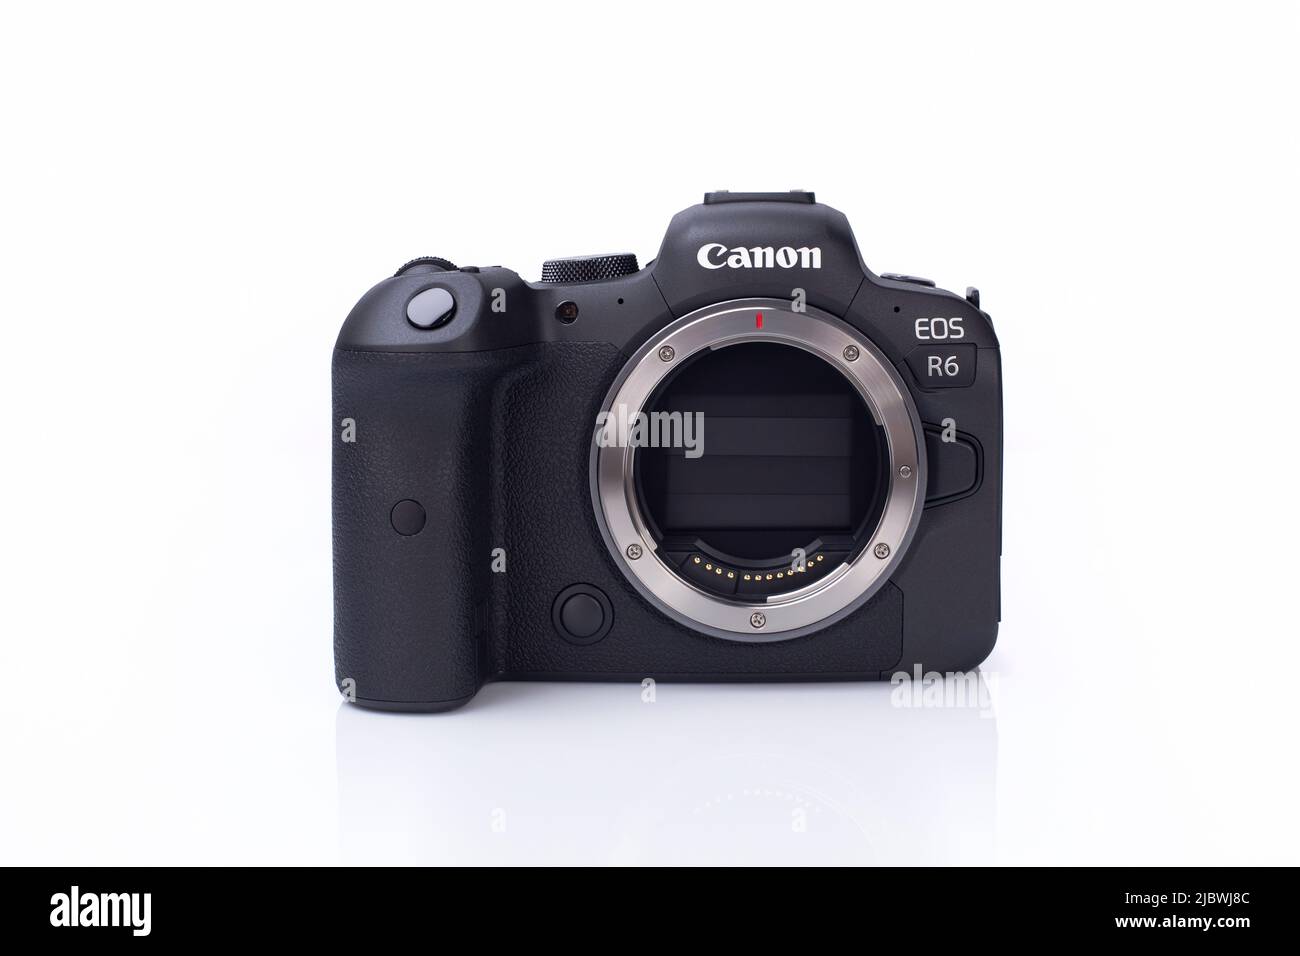 Galati, Romania - 12 ottobre 2021: Quando la fotocamera Canon EOS R6 è spenta, l'otturatore si chiude per proteggere il sensore dalla polvere. Canon R6 full frame senza specchi Foto Stock